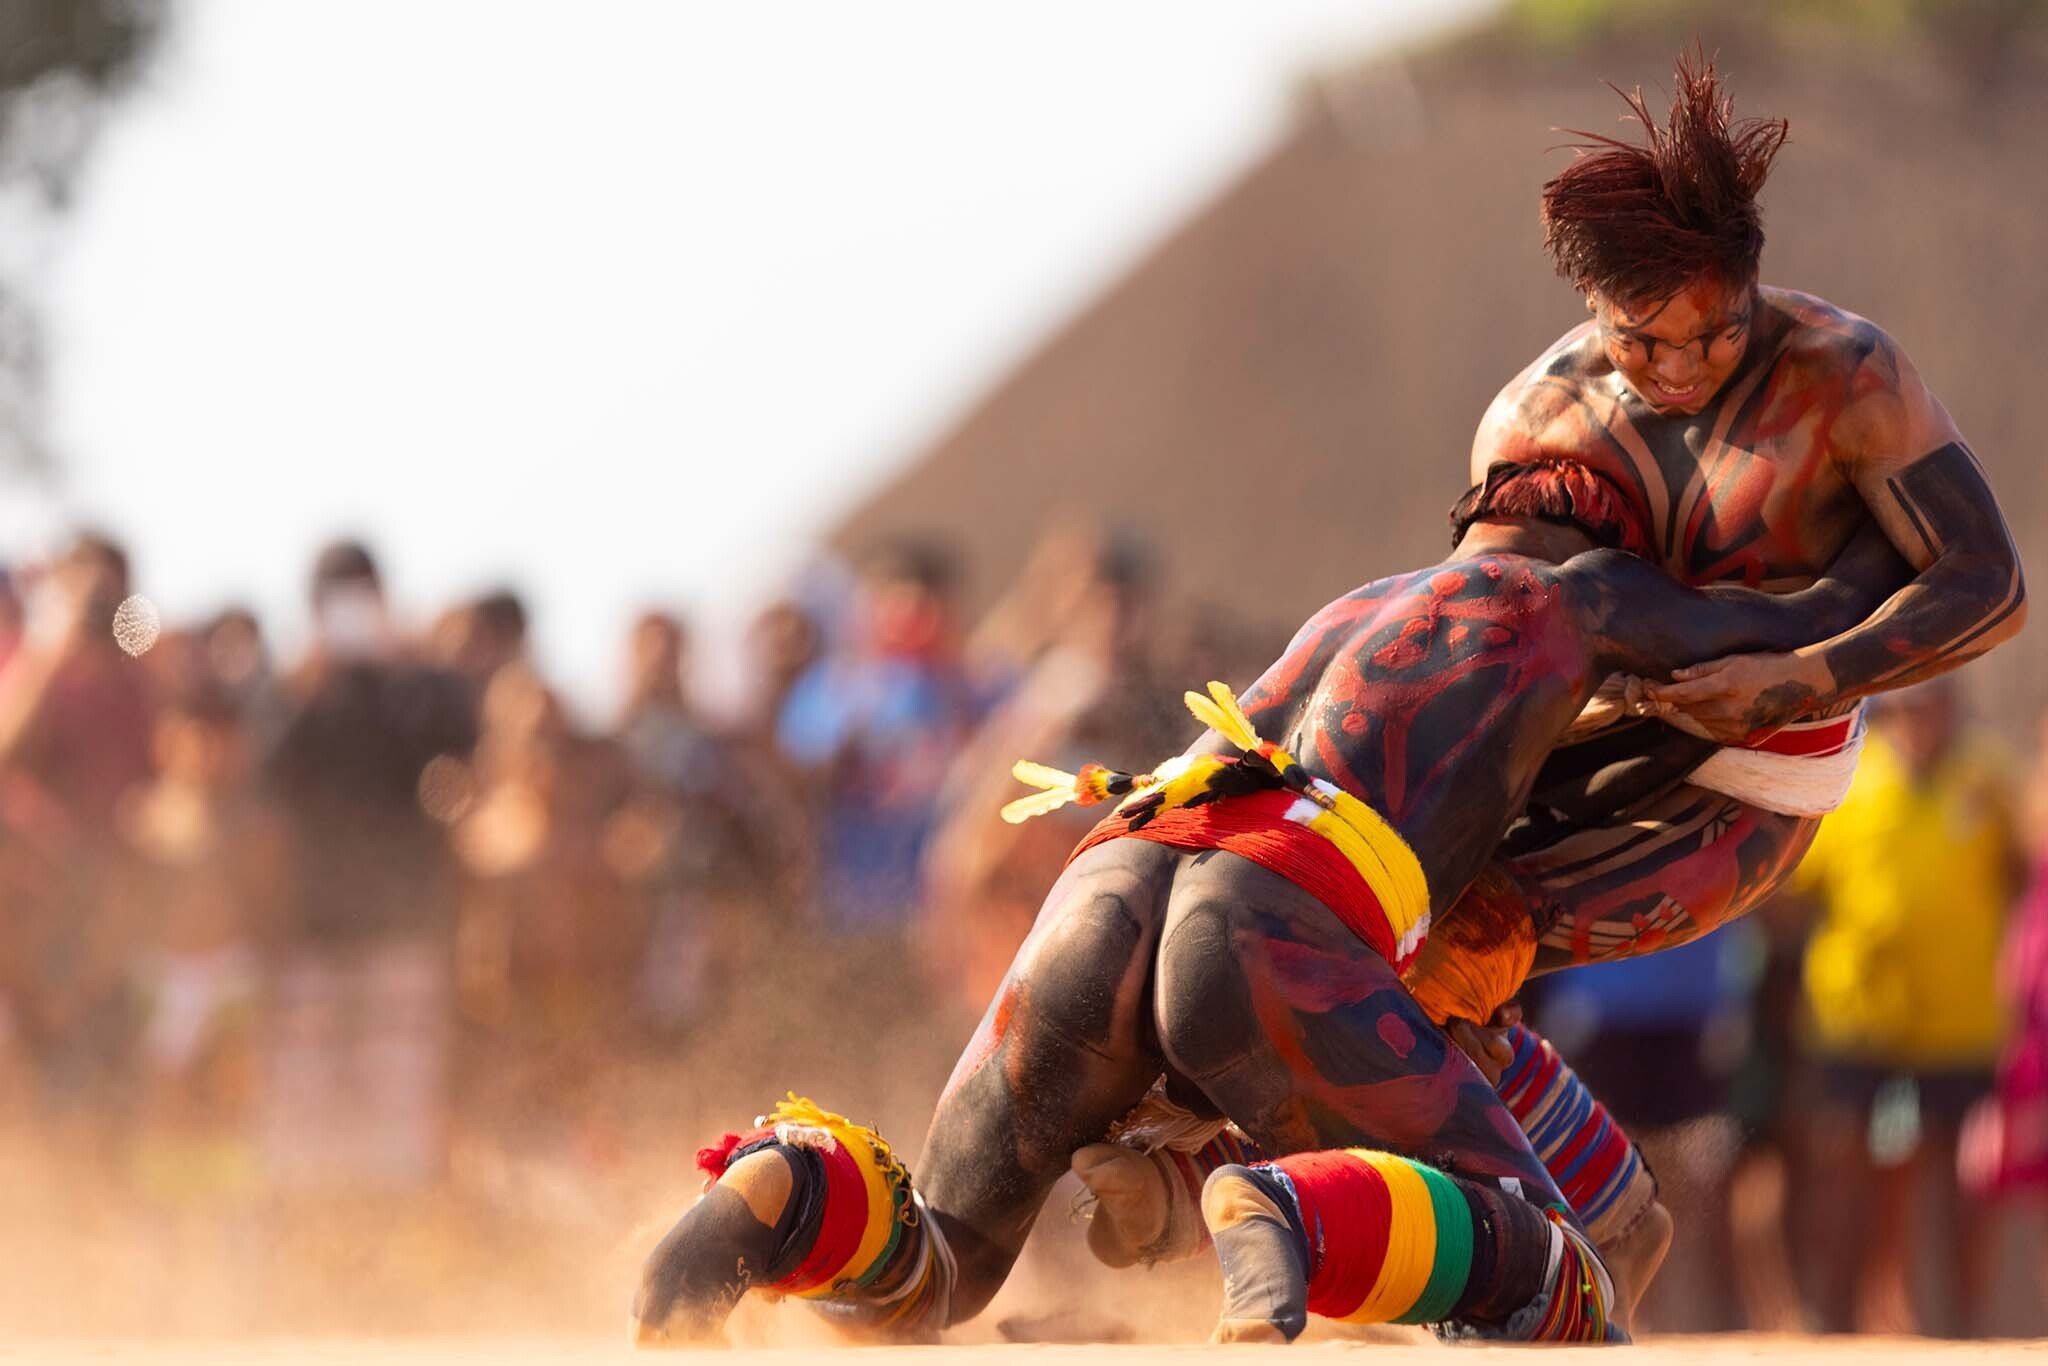 Uomini della riserva indigena dello Xingu, in Brasile, combattono per onorare la memoria del capo tribù Cacique Aritana - Ueslei Marcelino/REUTERS